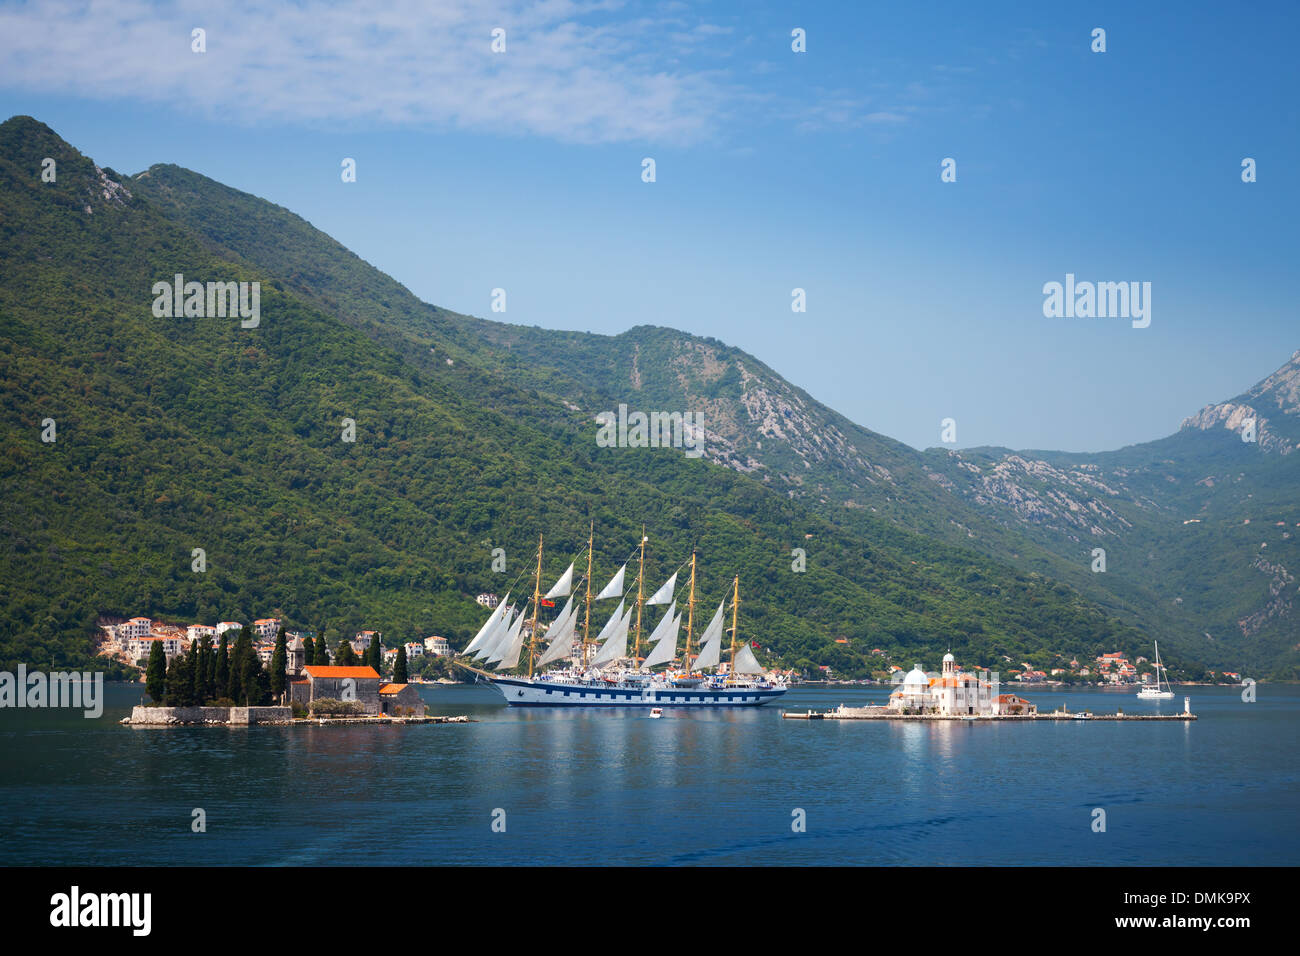 Bay of Kotor. Small islands and big sailing ship Stock Photo